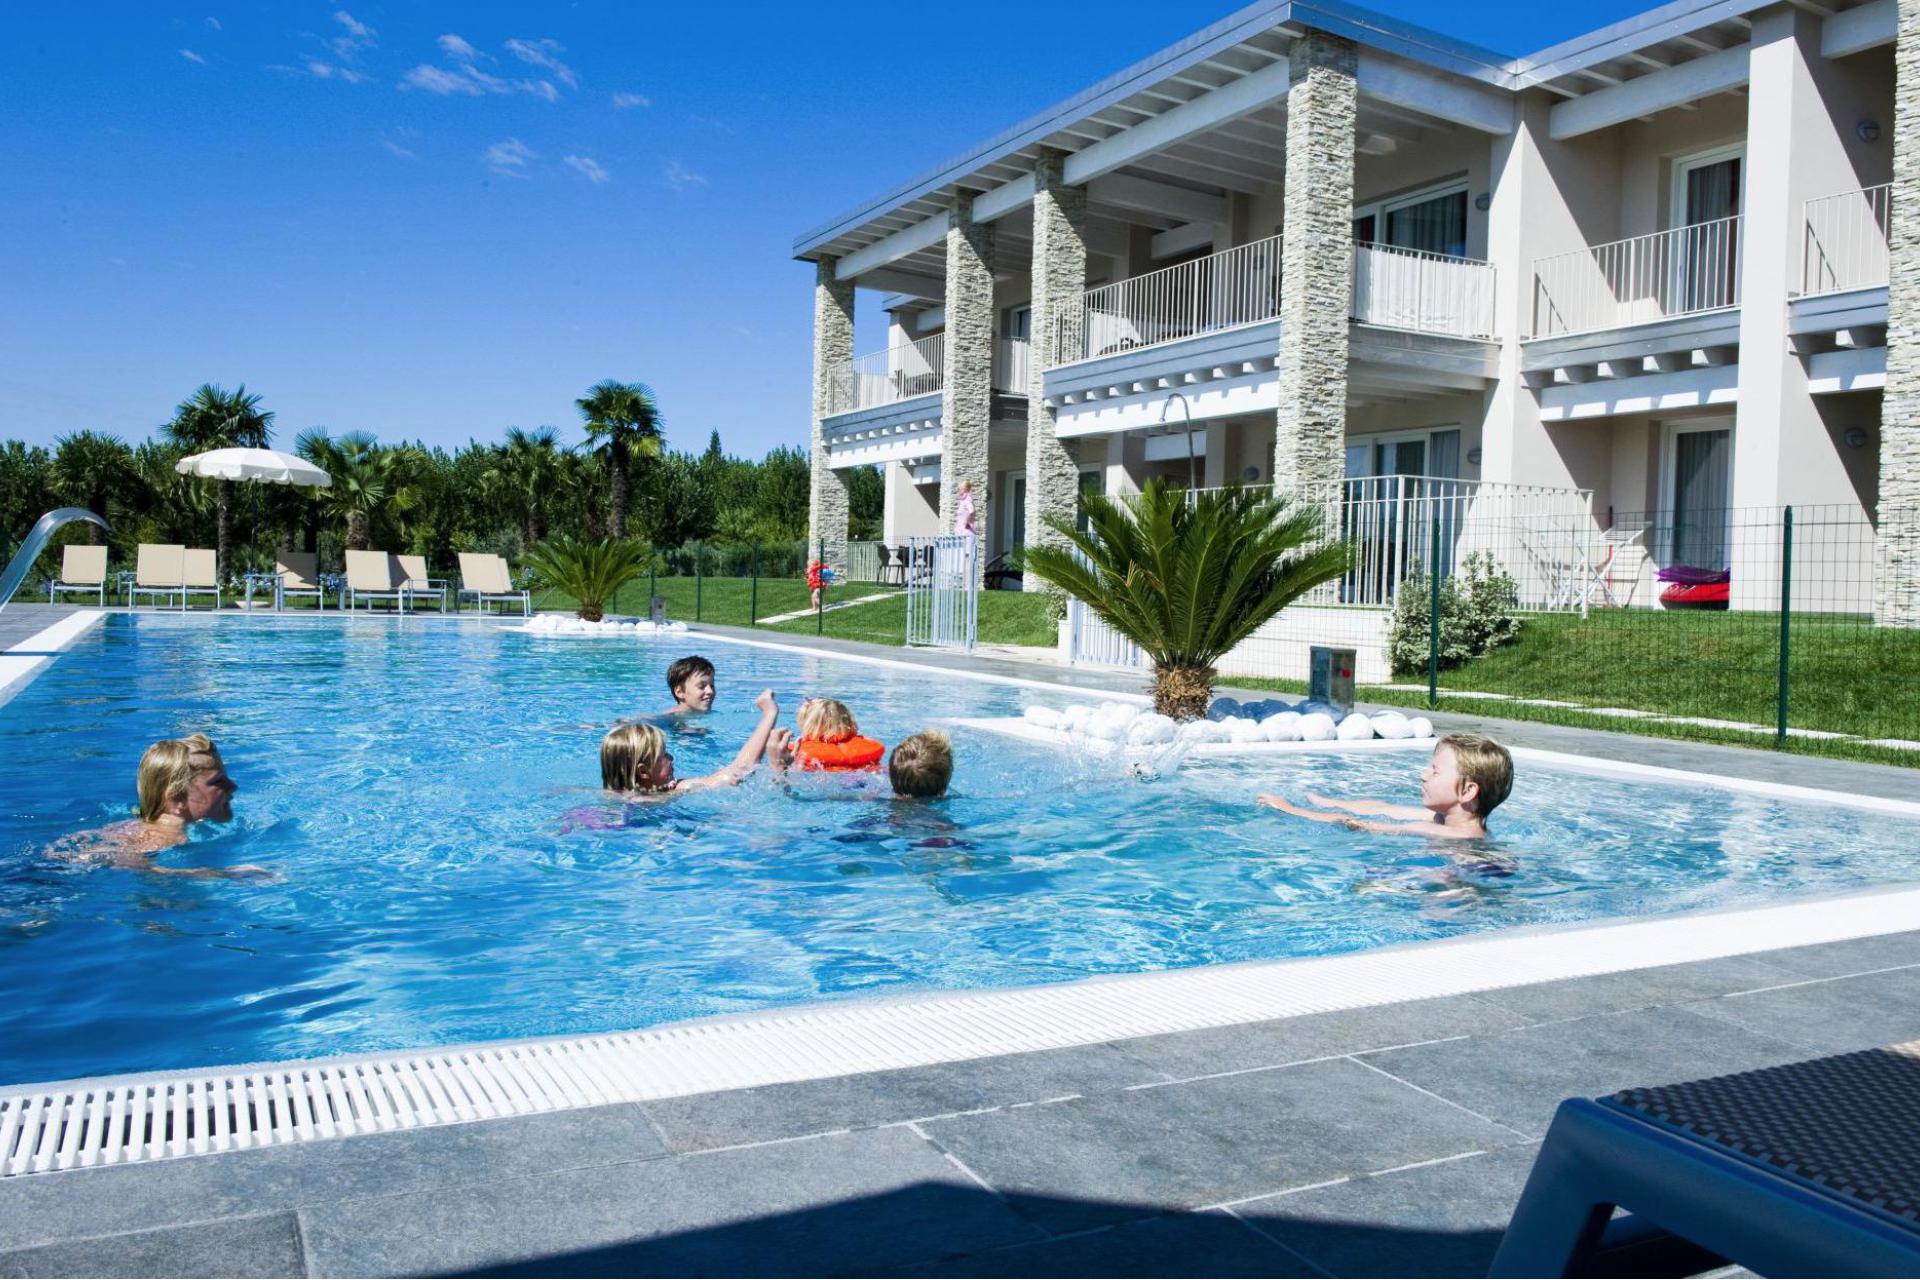 Familievriendelijke residence met omheind zwembad